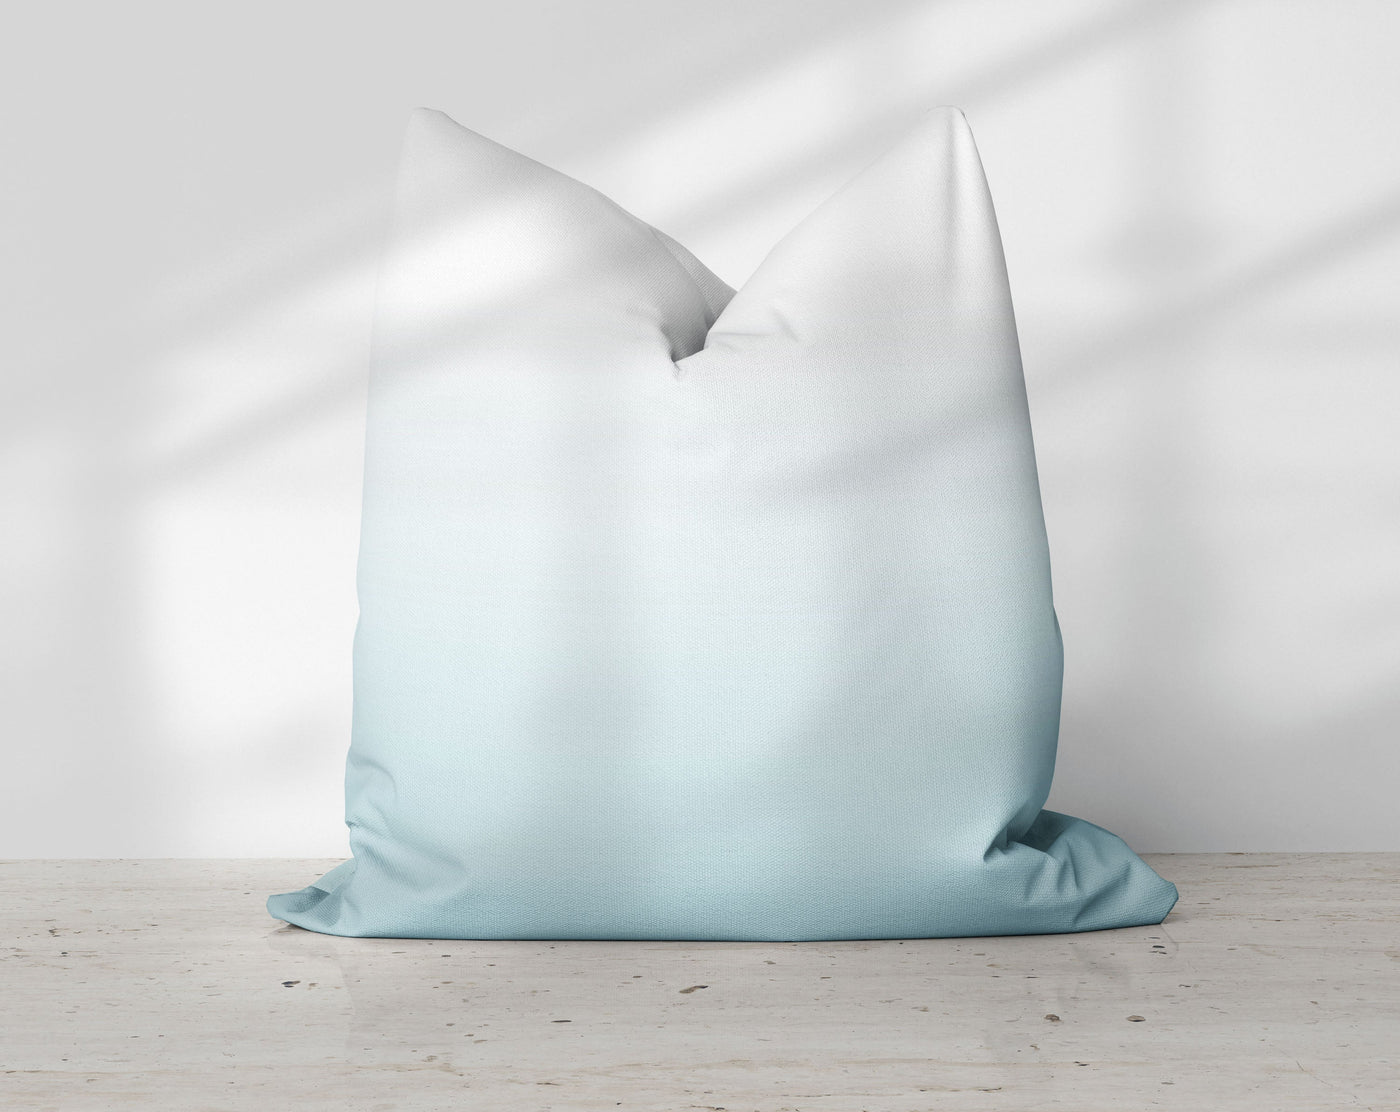 Ombre Spa Blue Pillow Throw - Cush Potato Pillows